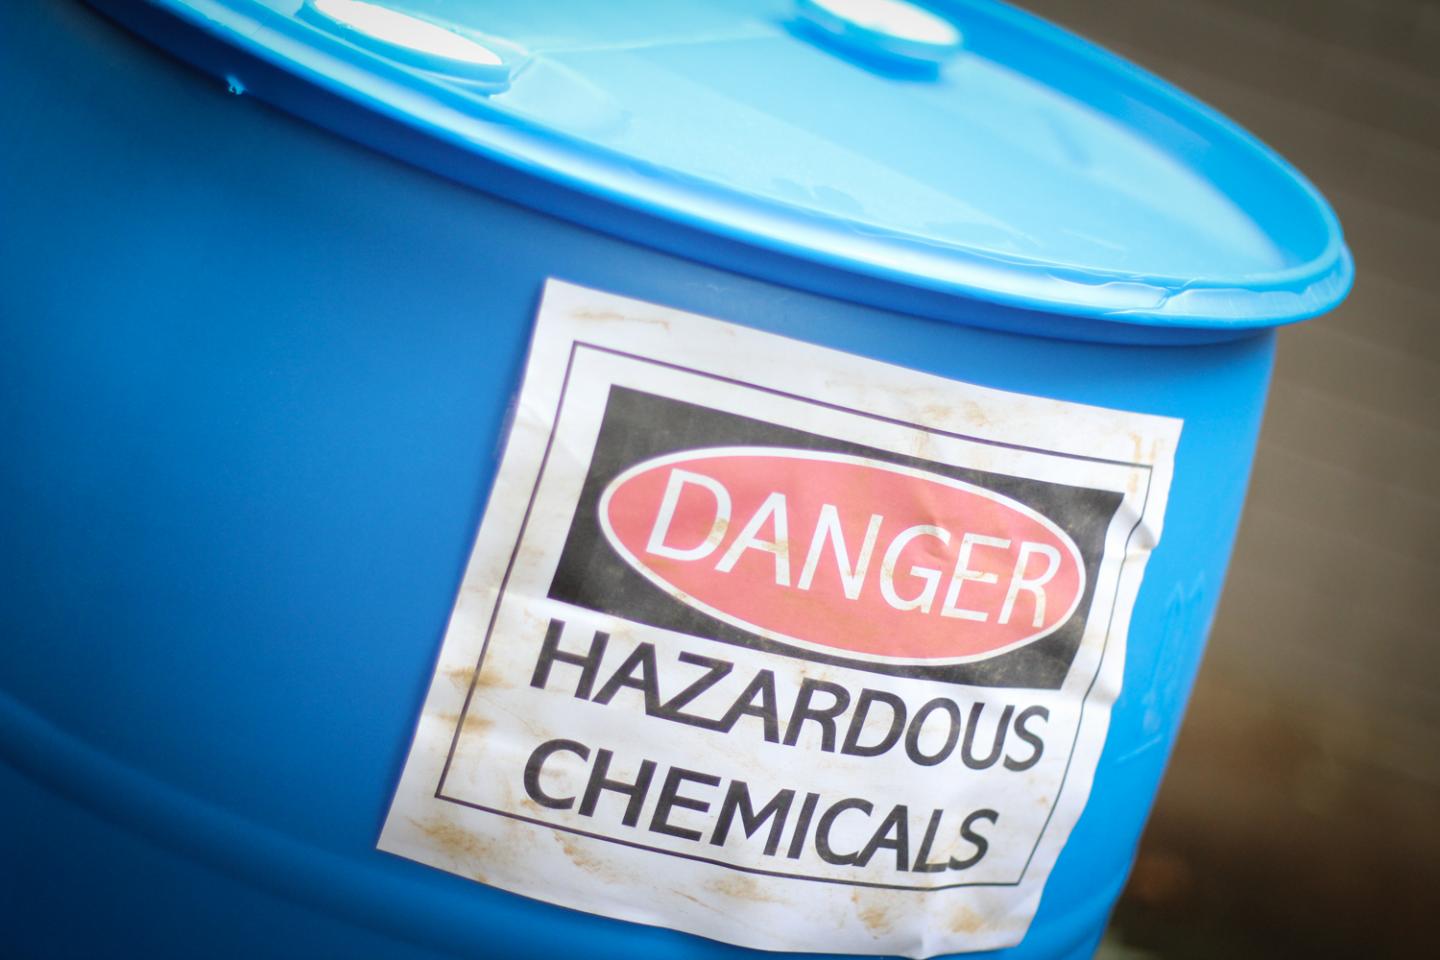 Hazardous Chemicals Image Eurekalert Science News Releases